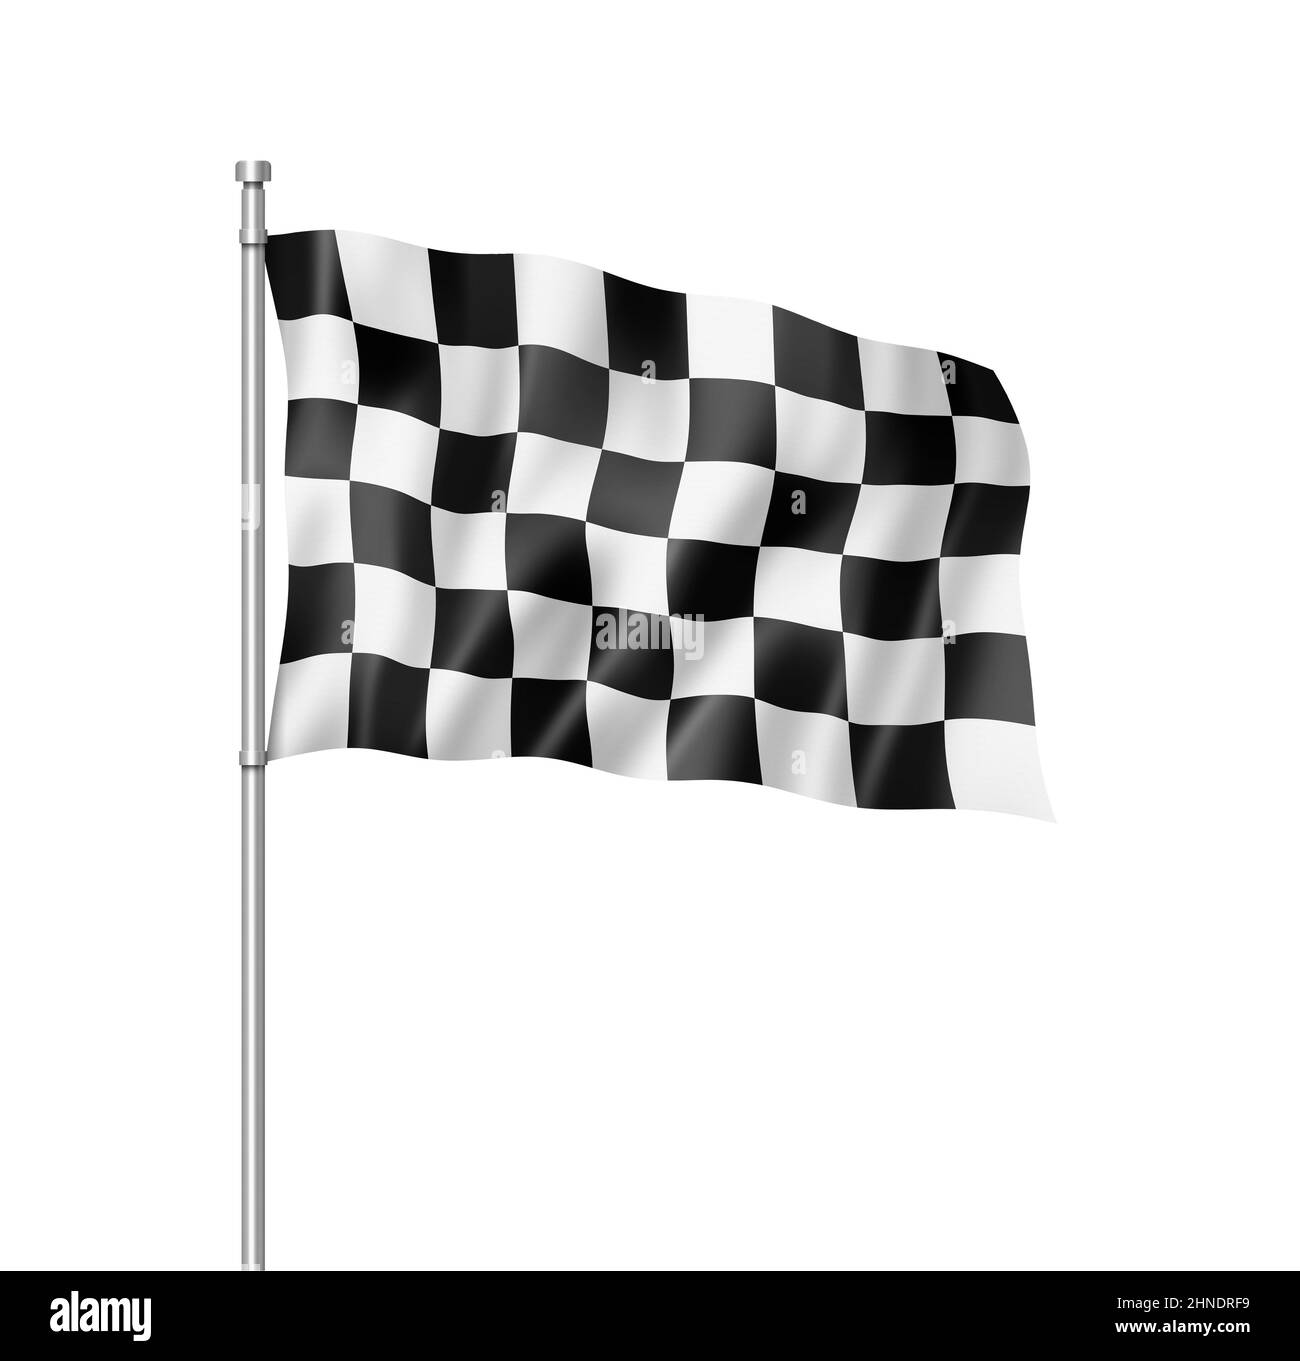 Fin de course automobile drapeau à damiers, le rendu en trois dimensions, isolated on white Banque D'Images